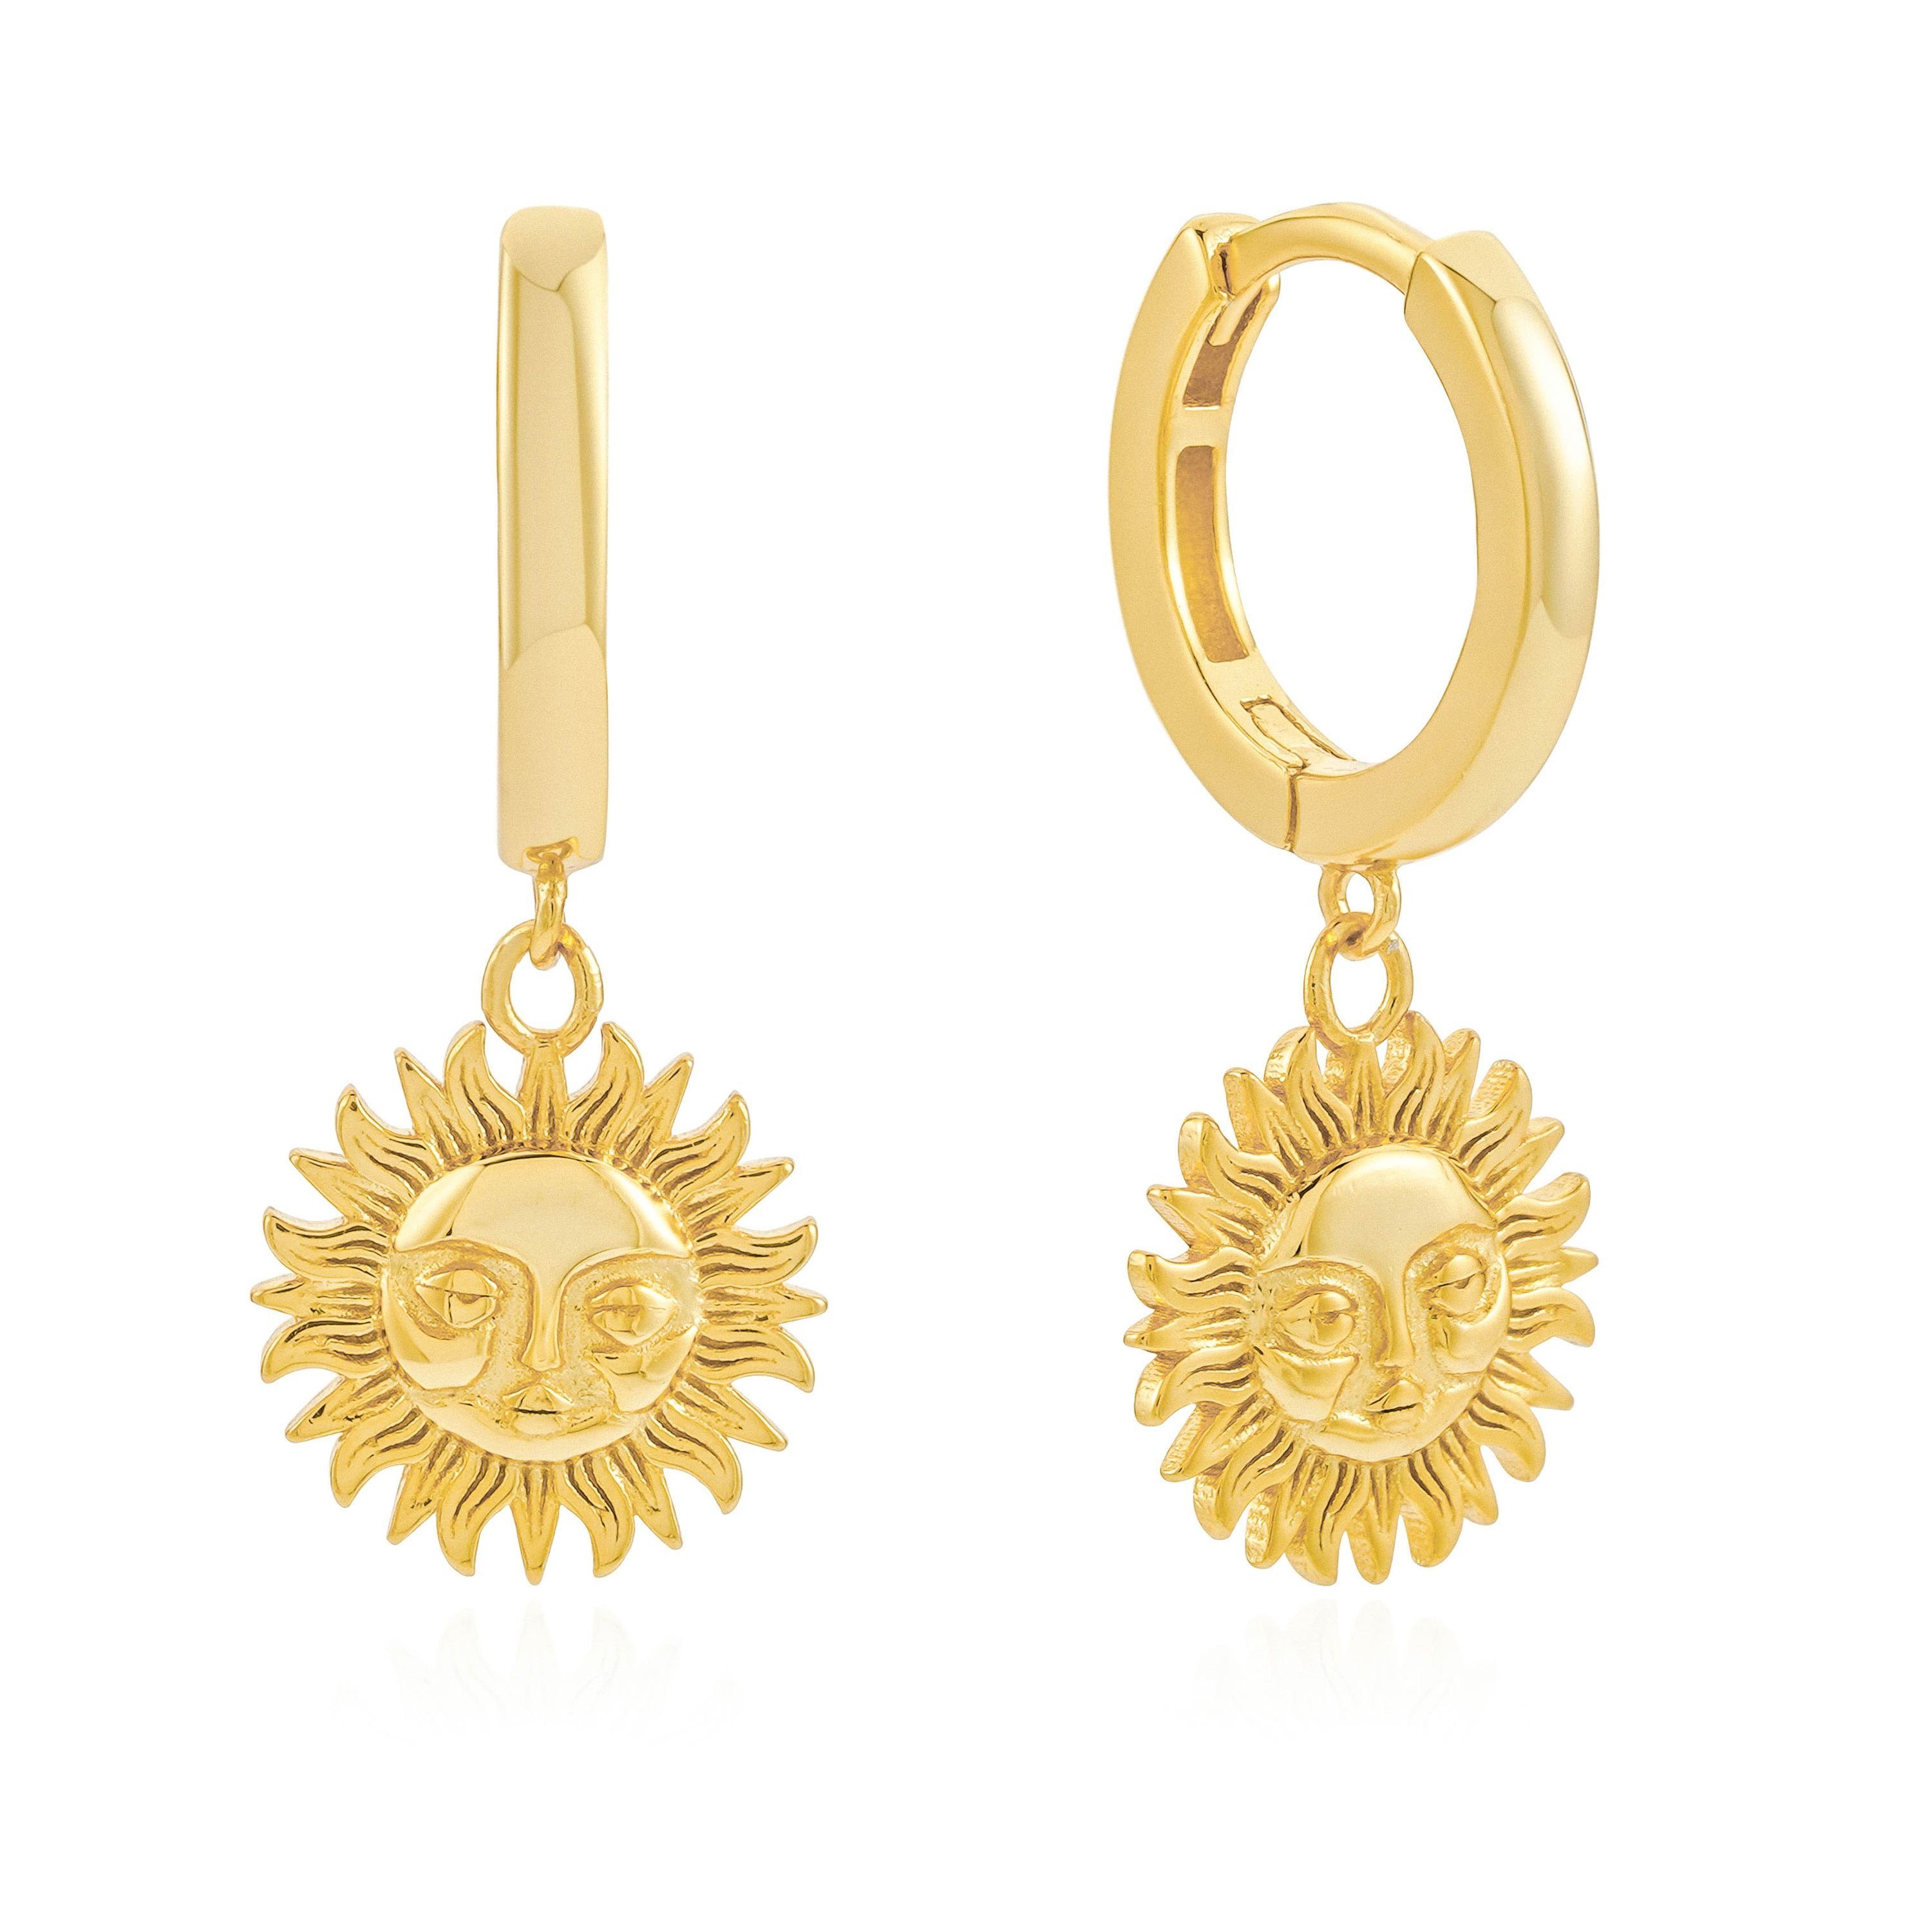 Brandlinger Paar Ohrhänger Sonne Salerno, vergoldet, 925 Ohrringe Ohrringe Anhänger mit Silber